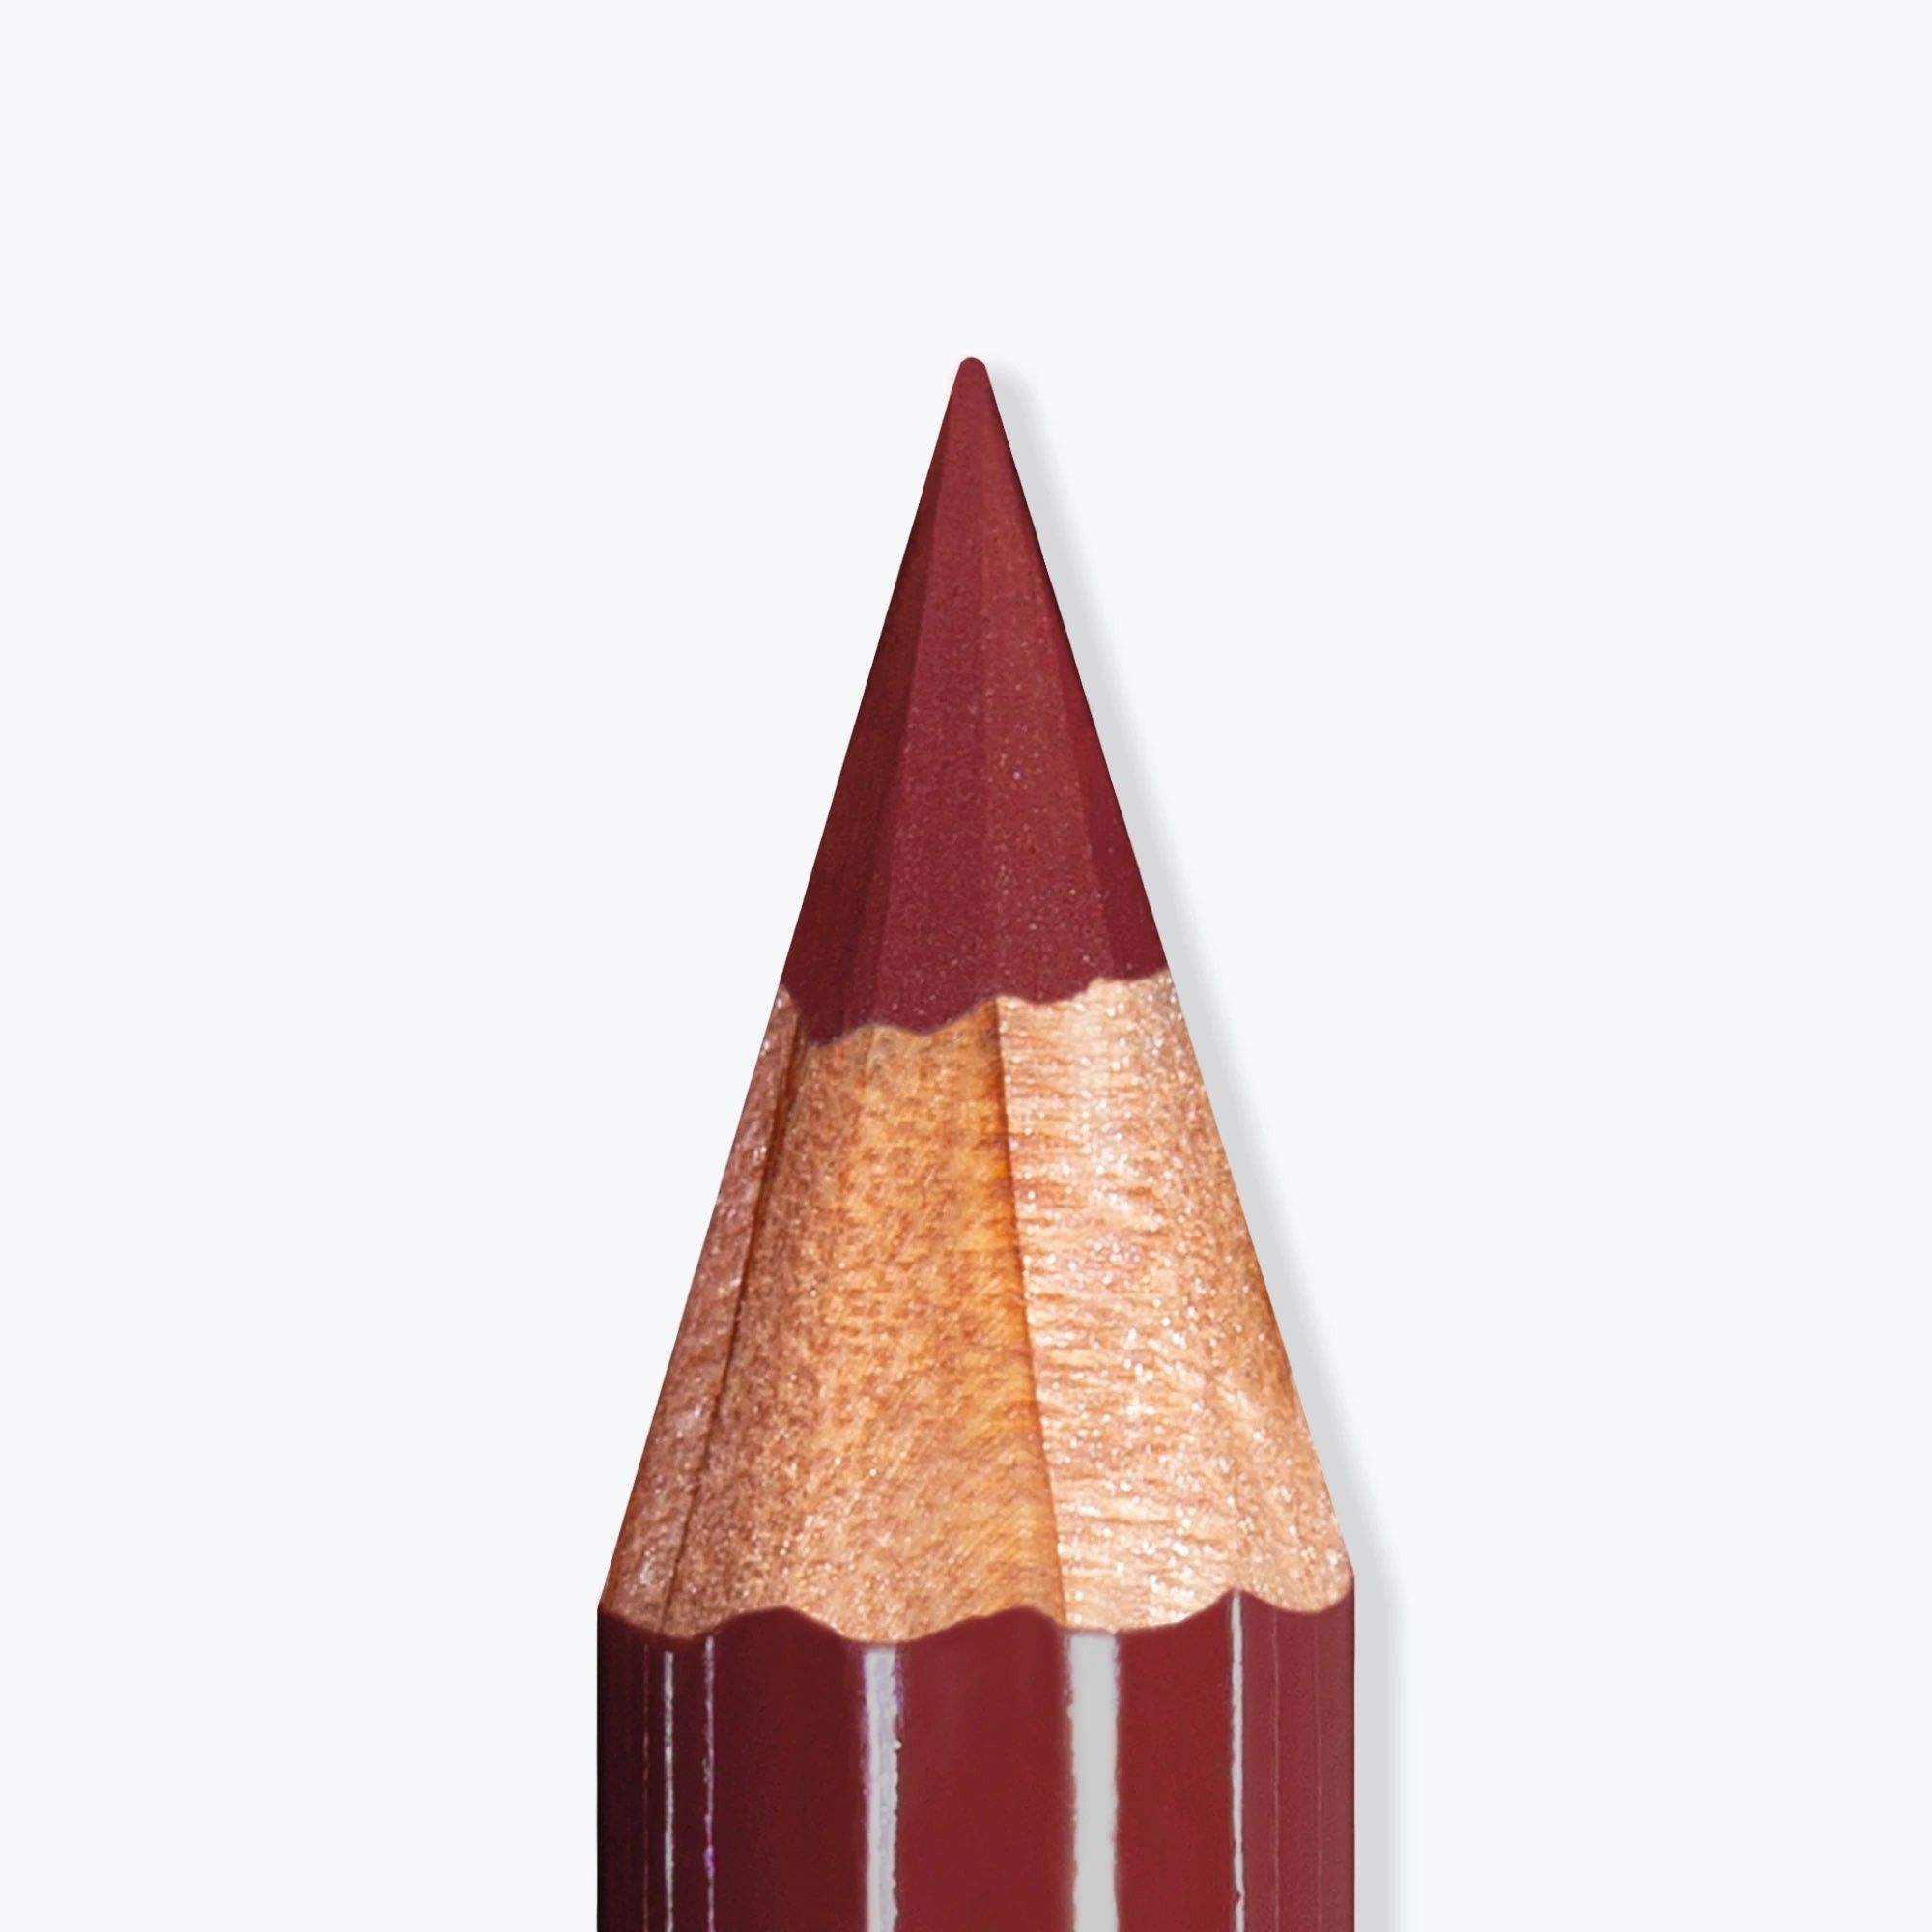 Lipliner - Artist Lips - Lip Pencil